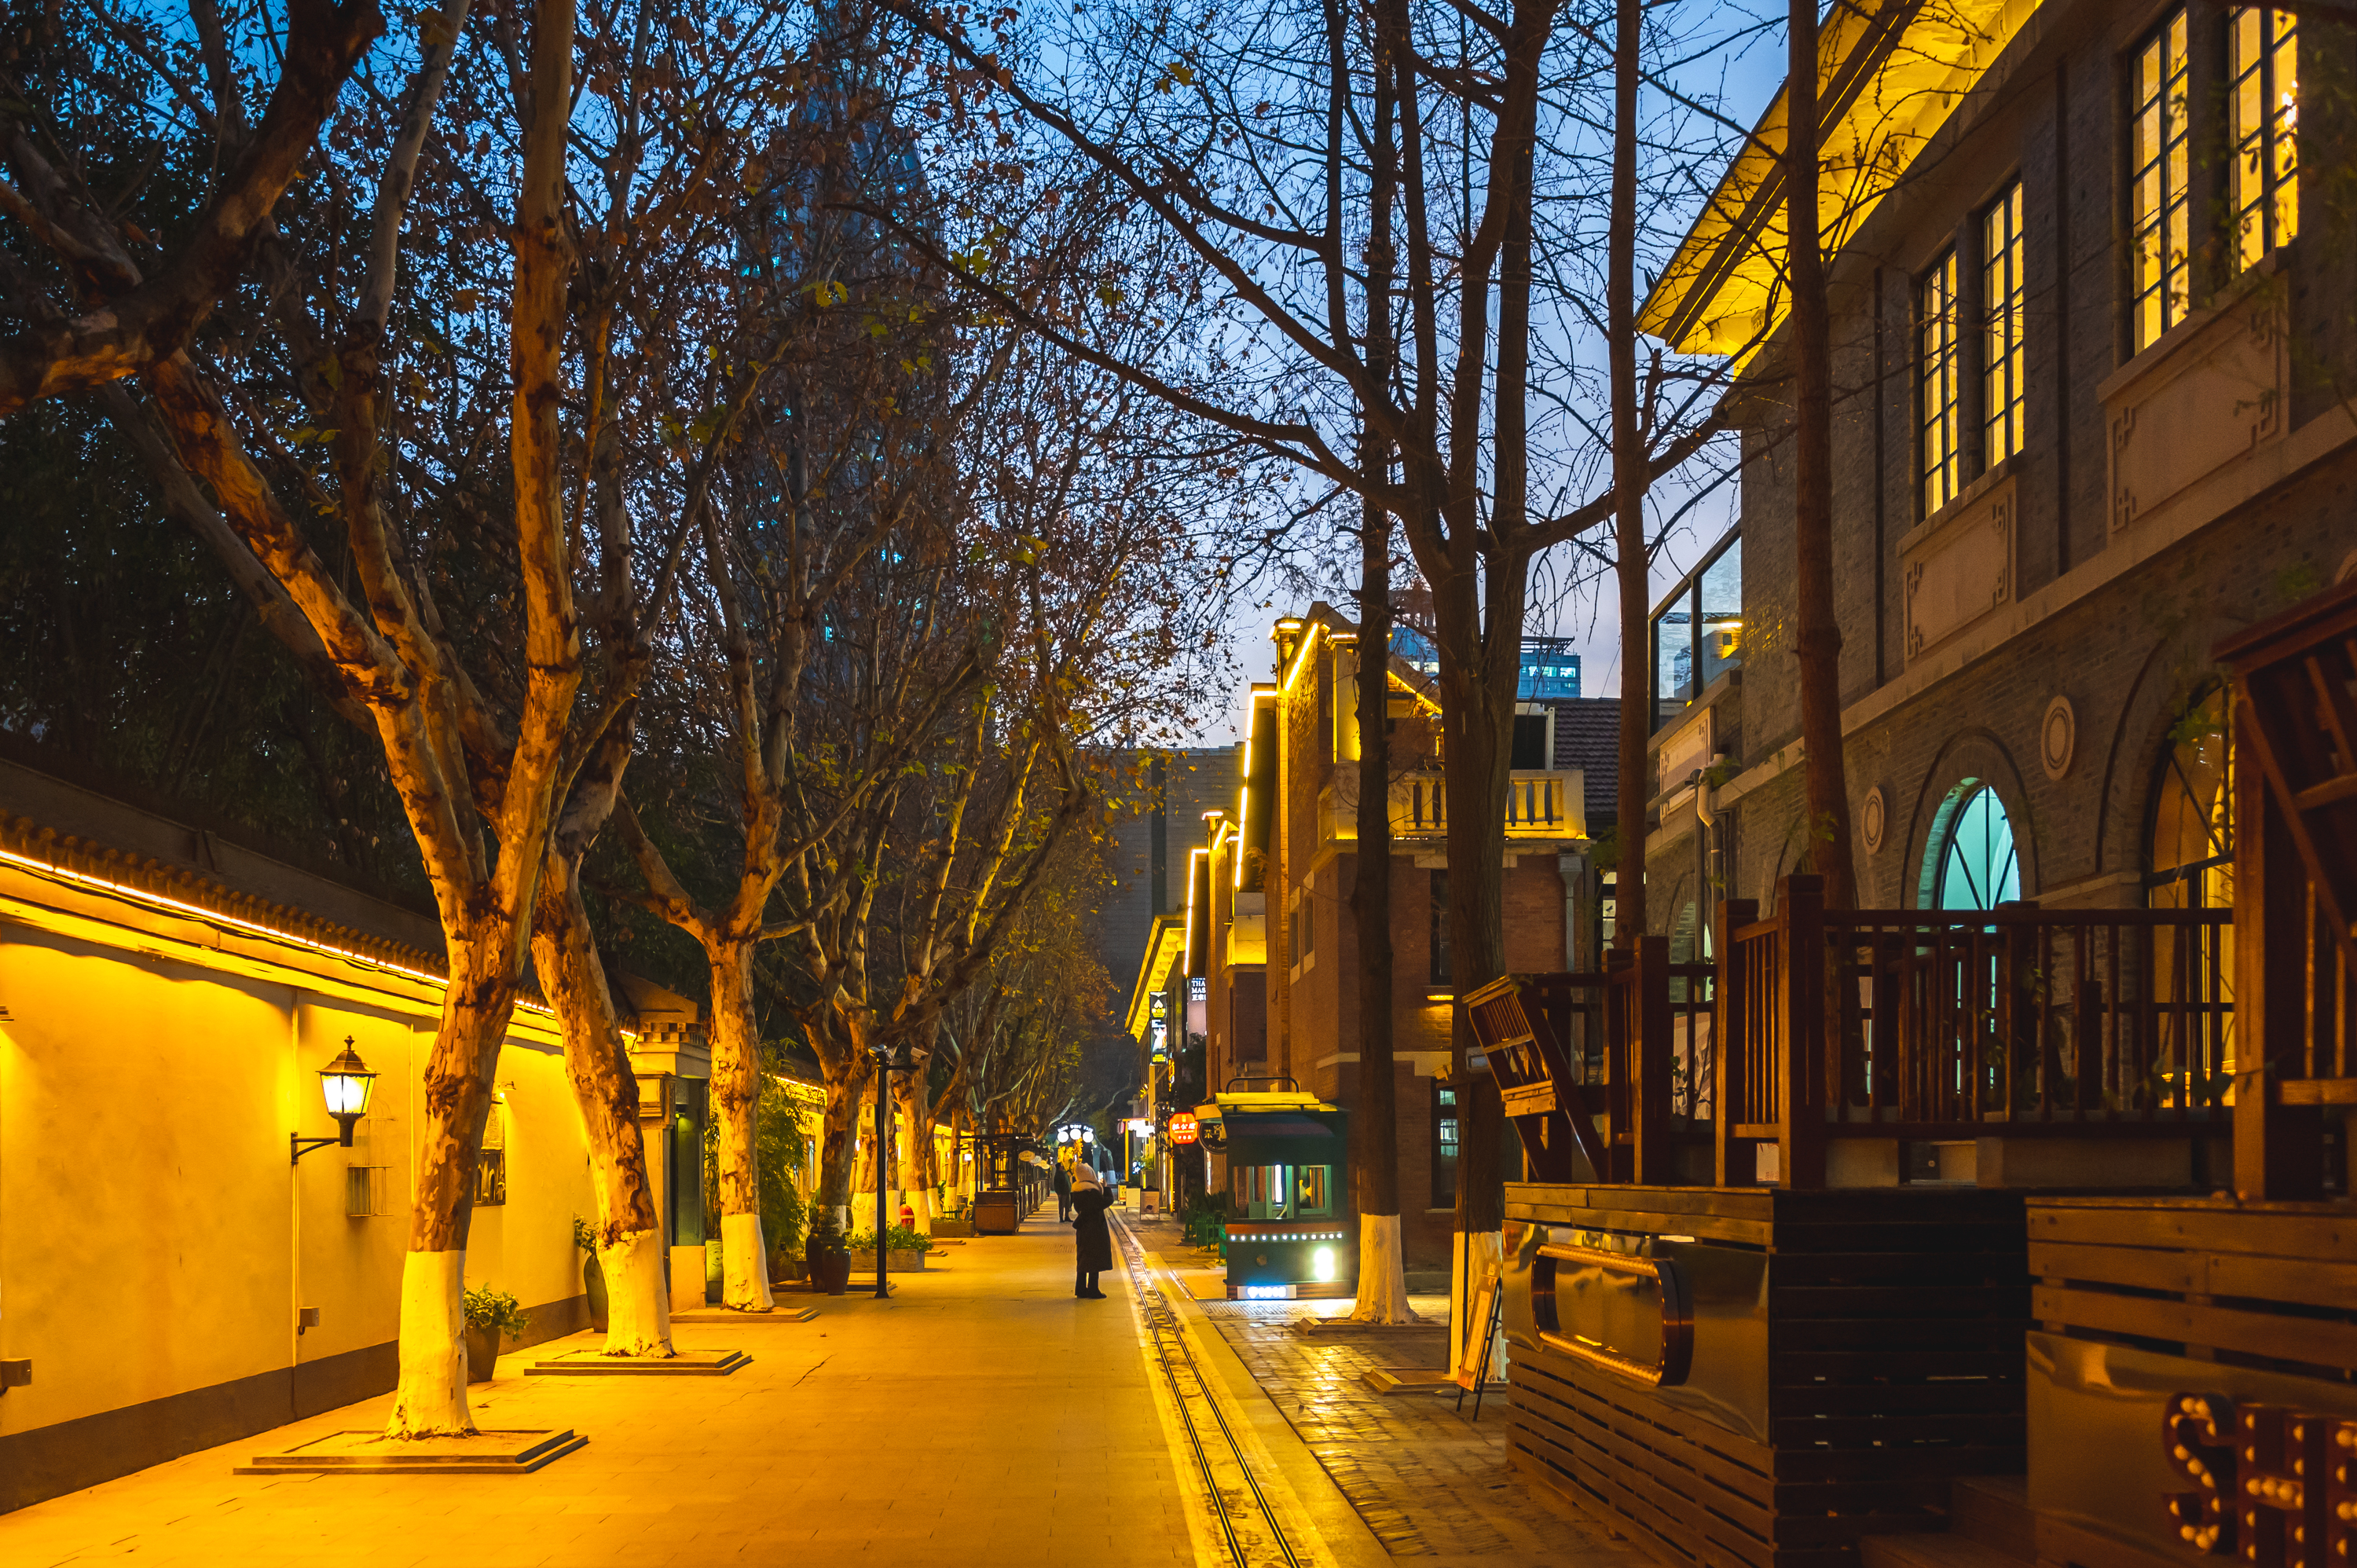 1912历史街区,夜色下藏着的老金陵时尚天地,堪称南京不夜城